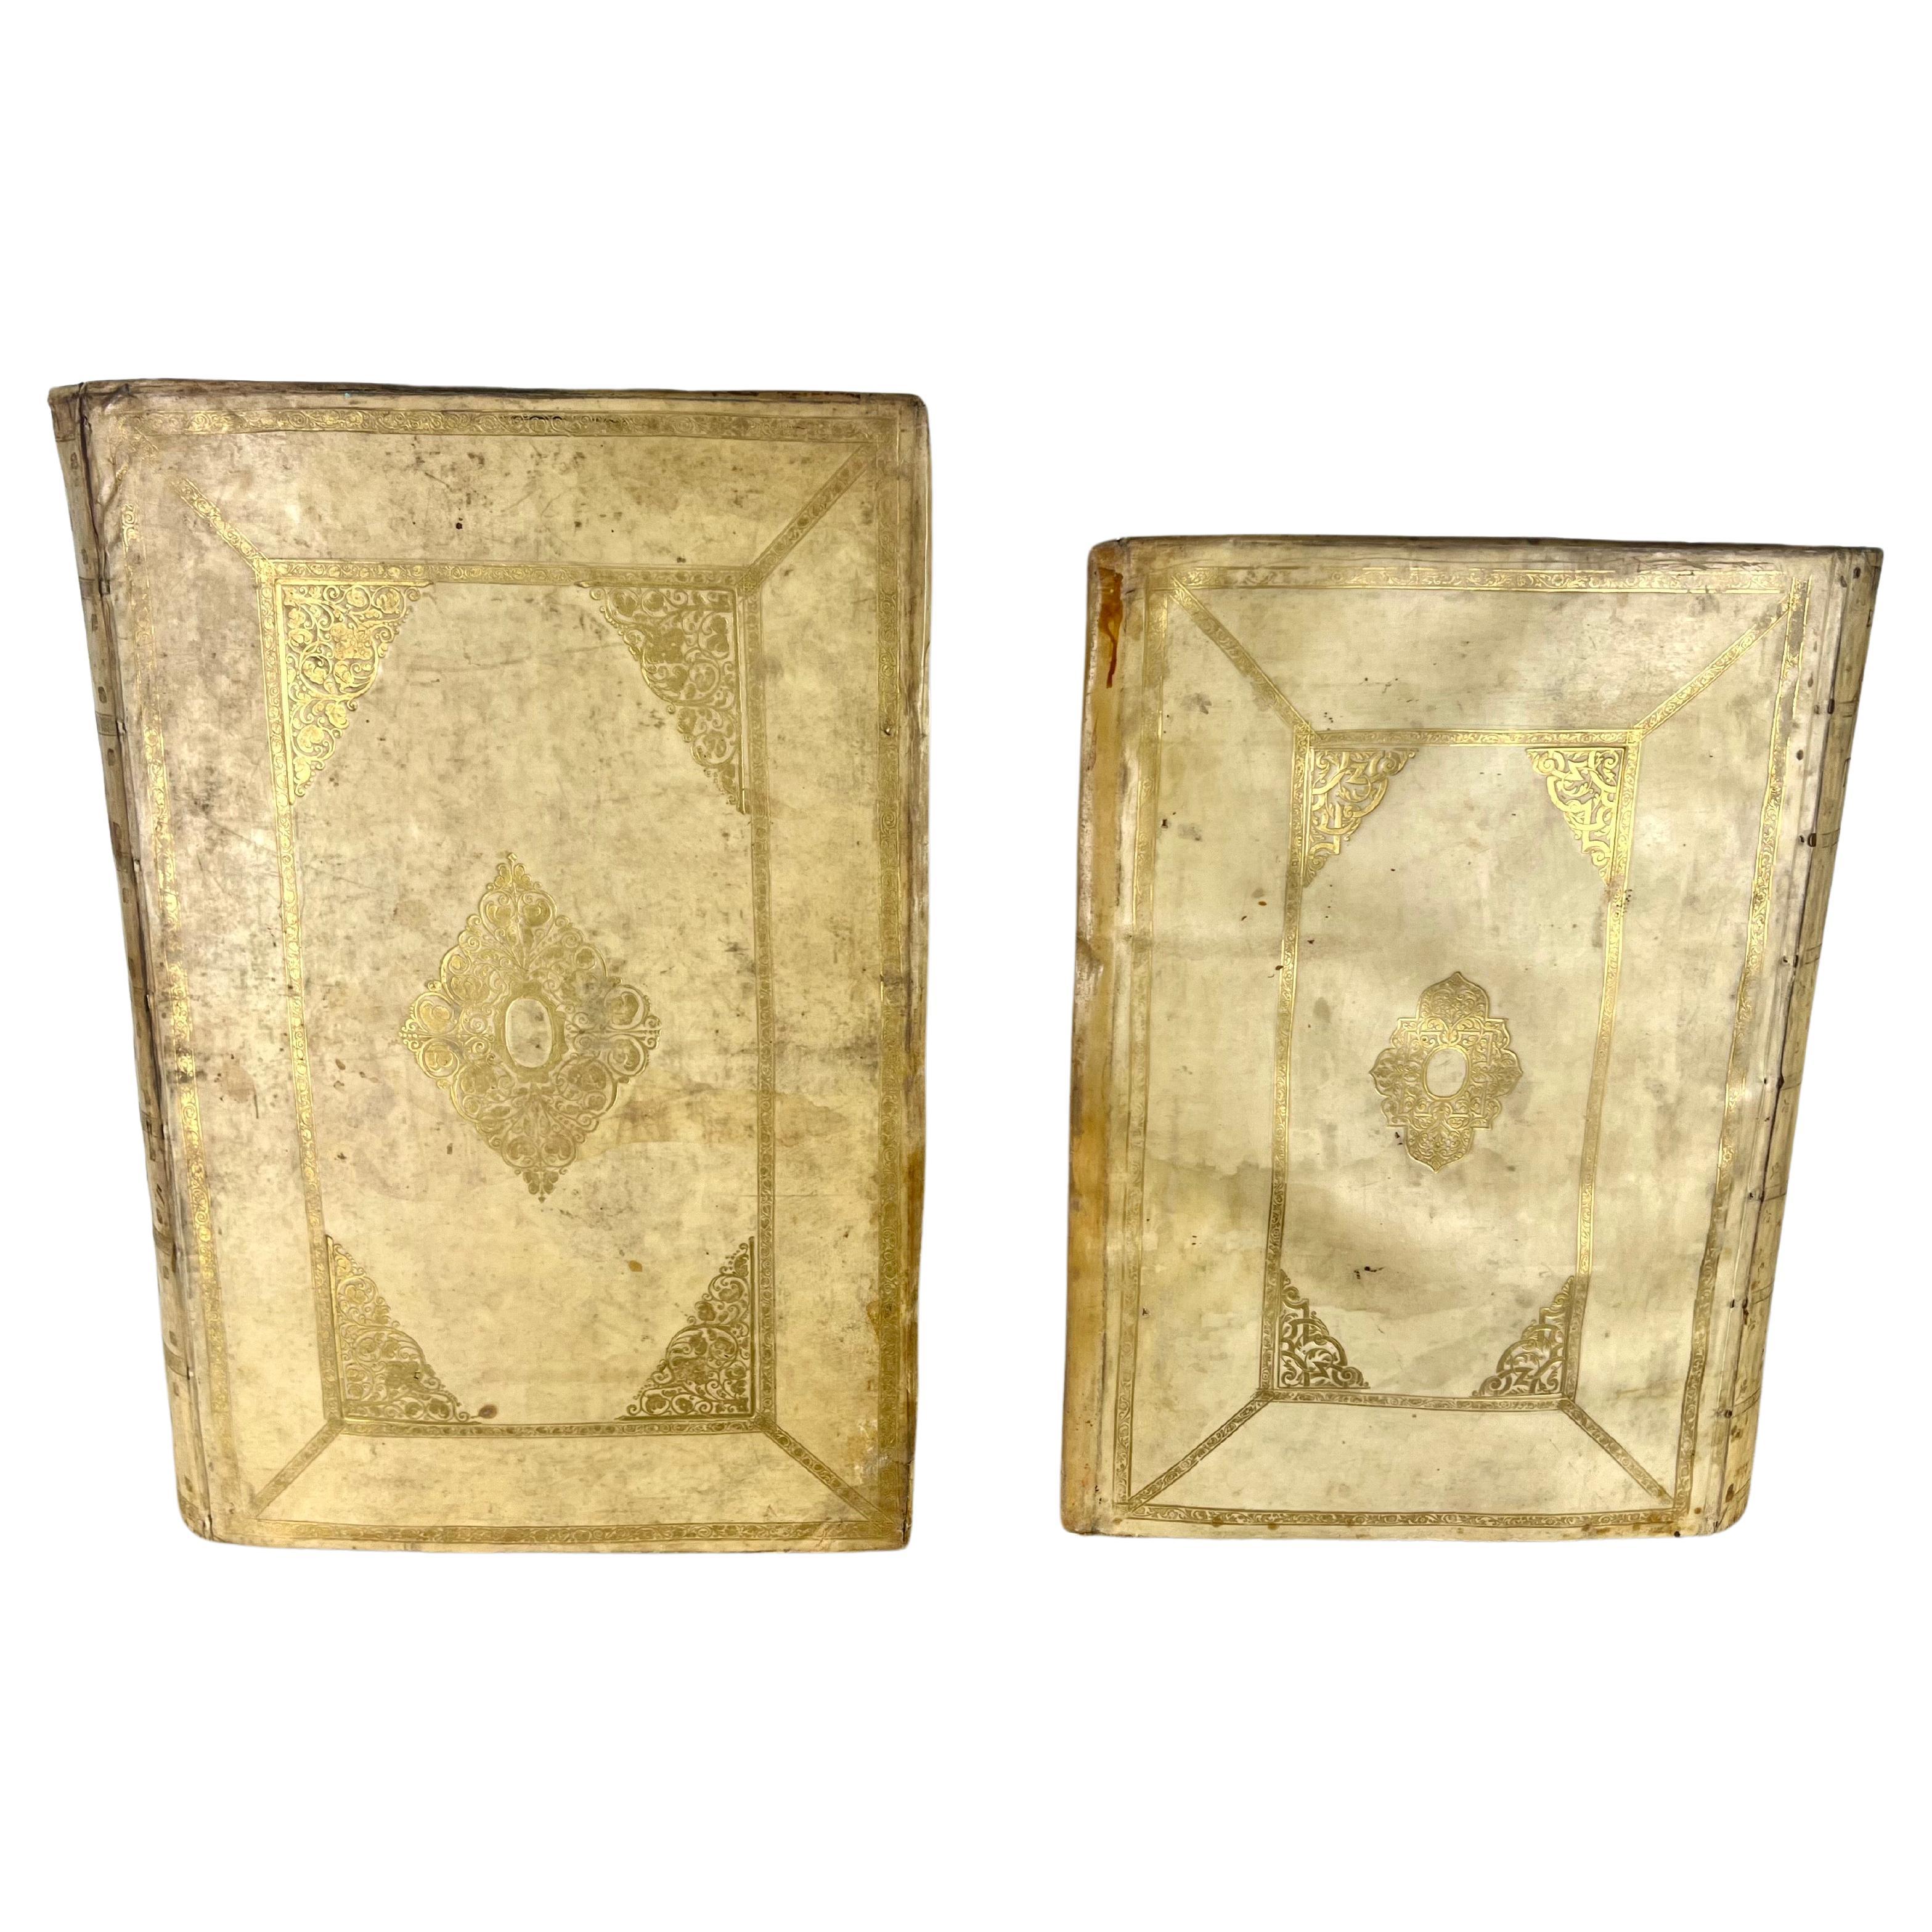 Deux contenants fabriqués à partir de livres anciens en velours. De forme triangulaire, elles sont ornées chacune d'un motif doré délavé sur un fond plus clair.  Le motif central en forme de diamant, bordé de motifs complexes, suggère une touche